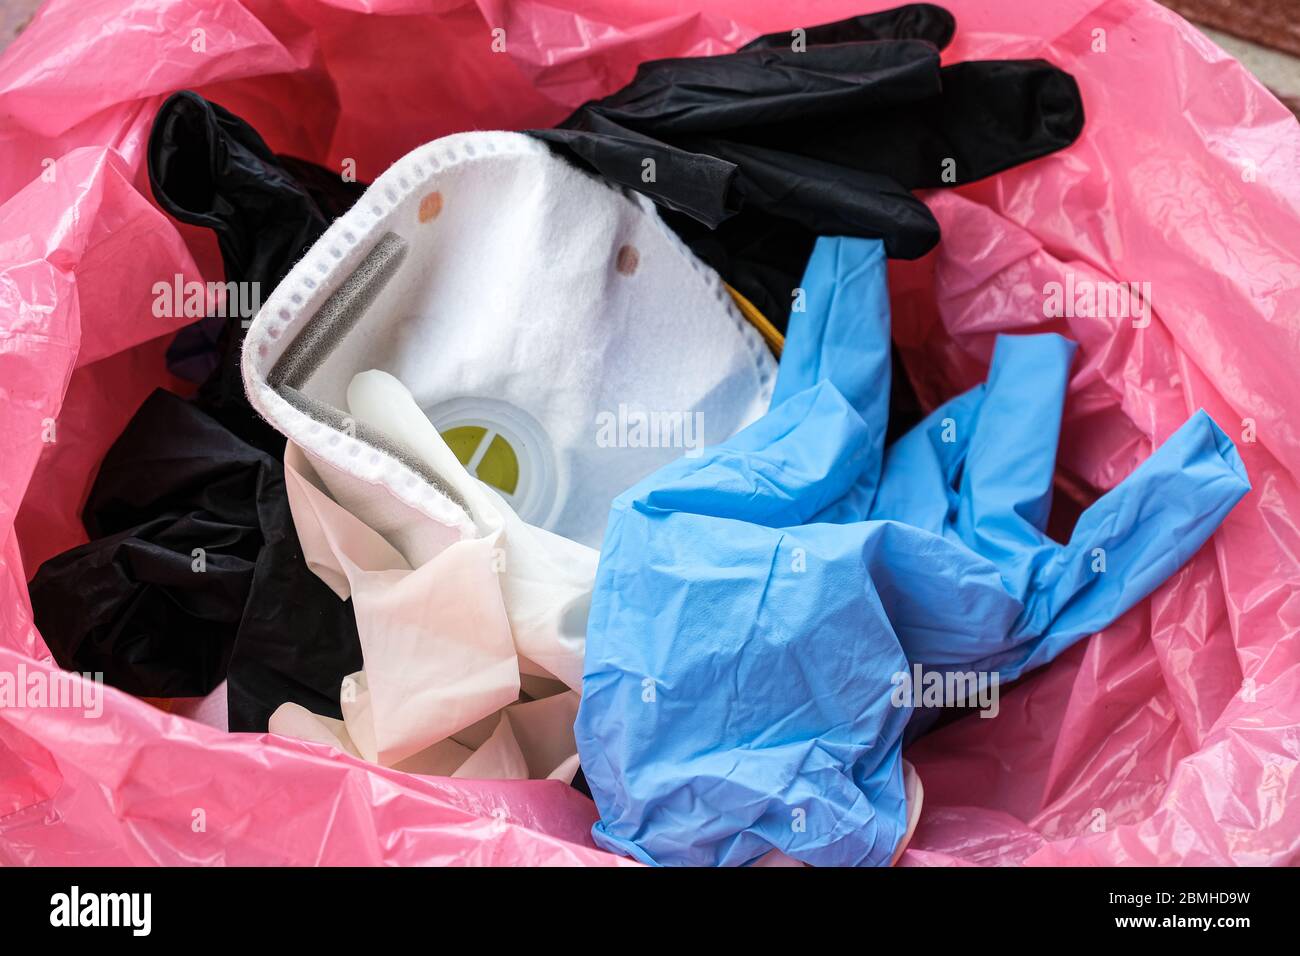 Maschera protettiva e guanti per uso medico in bidone per rifiuti, articoli per attrezzature per malattie da coronavirus Foto Stock